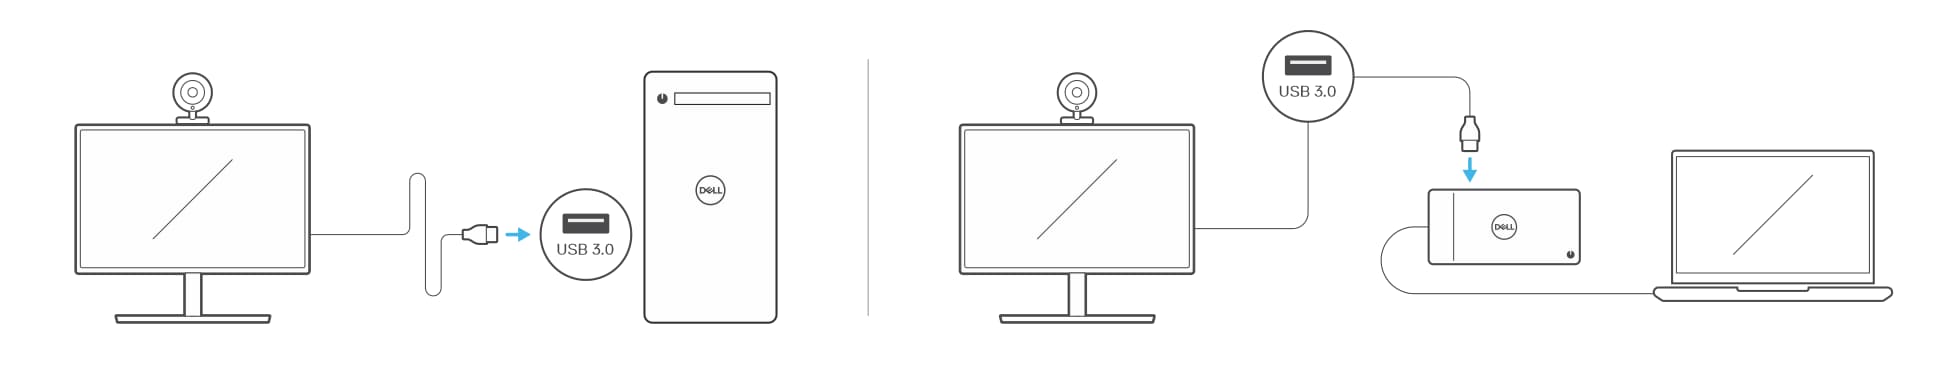 USB-webkamera csatlakoztatása asztali PC-hez és laptophoz